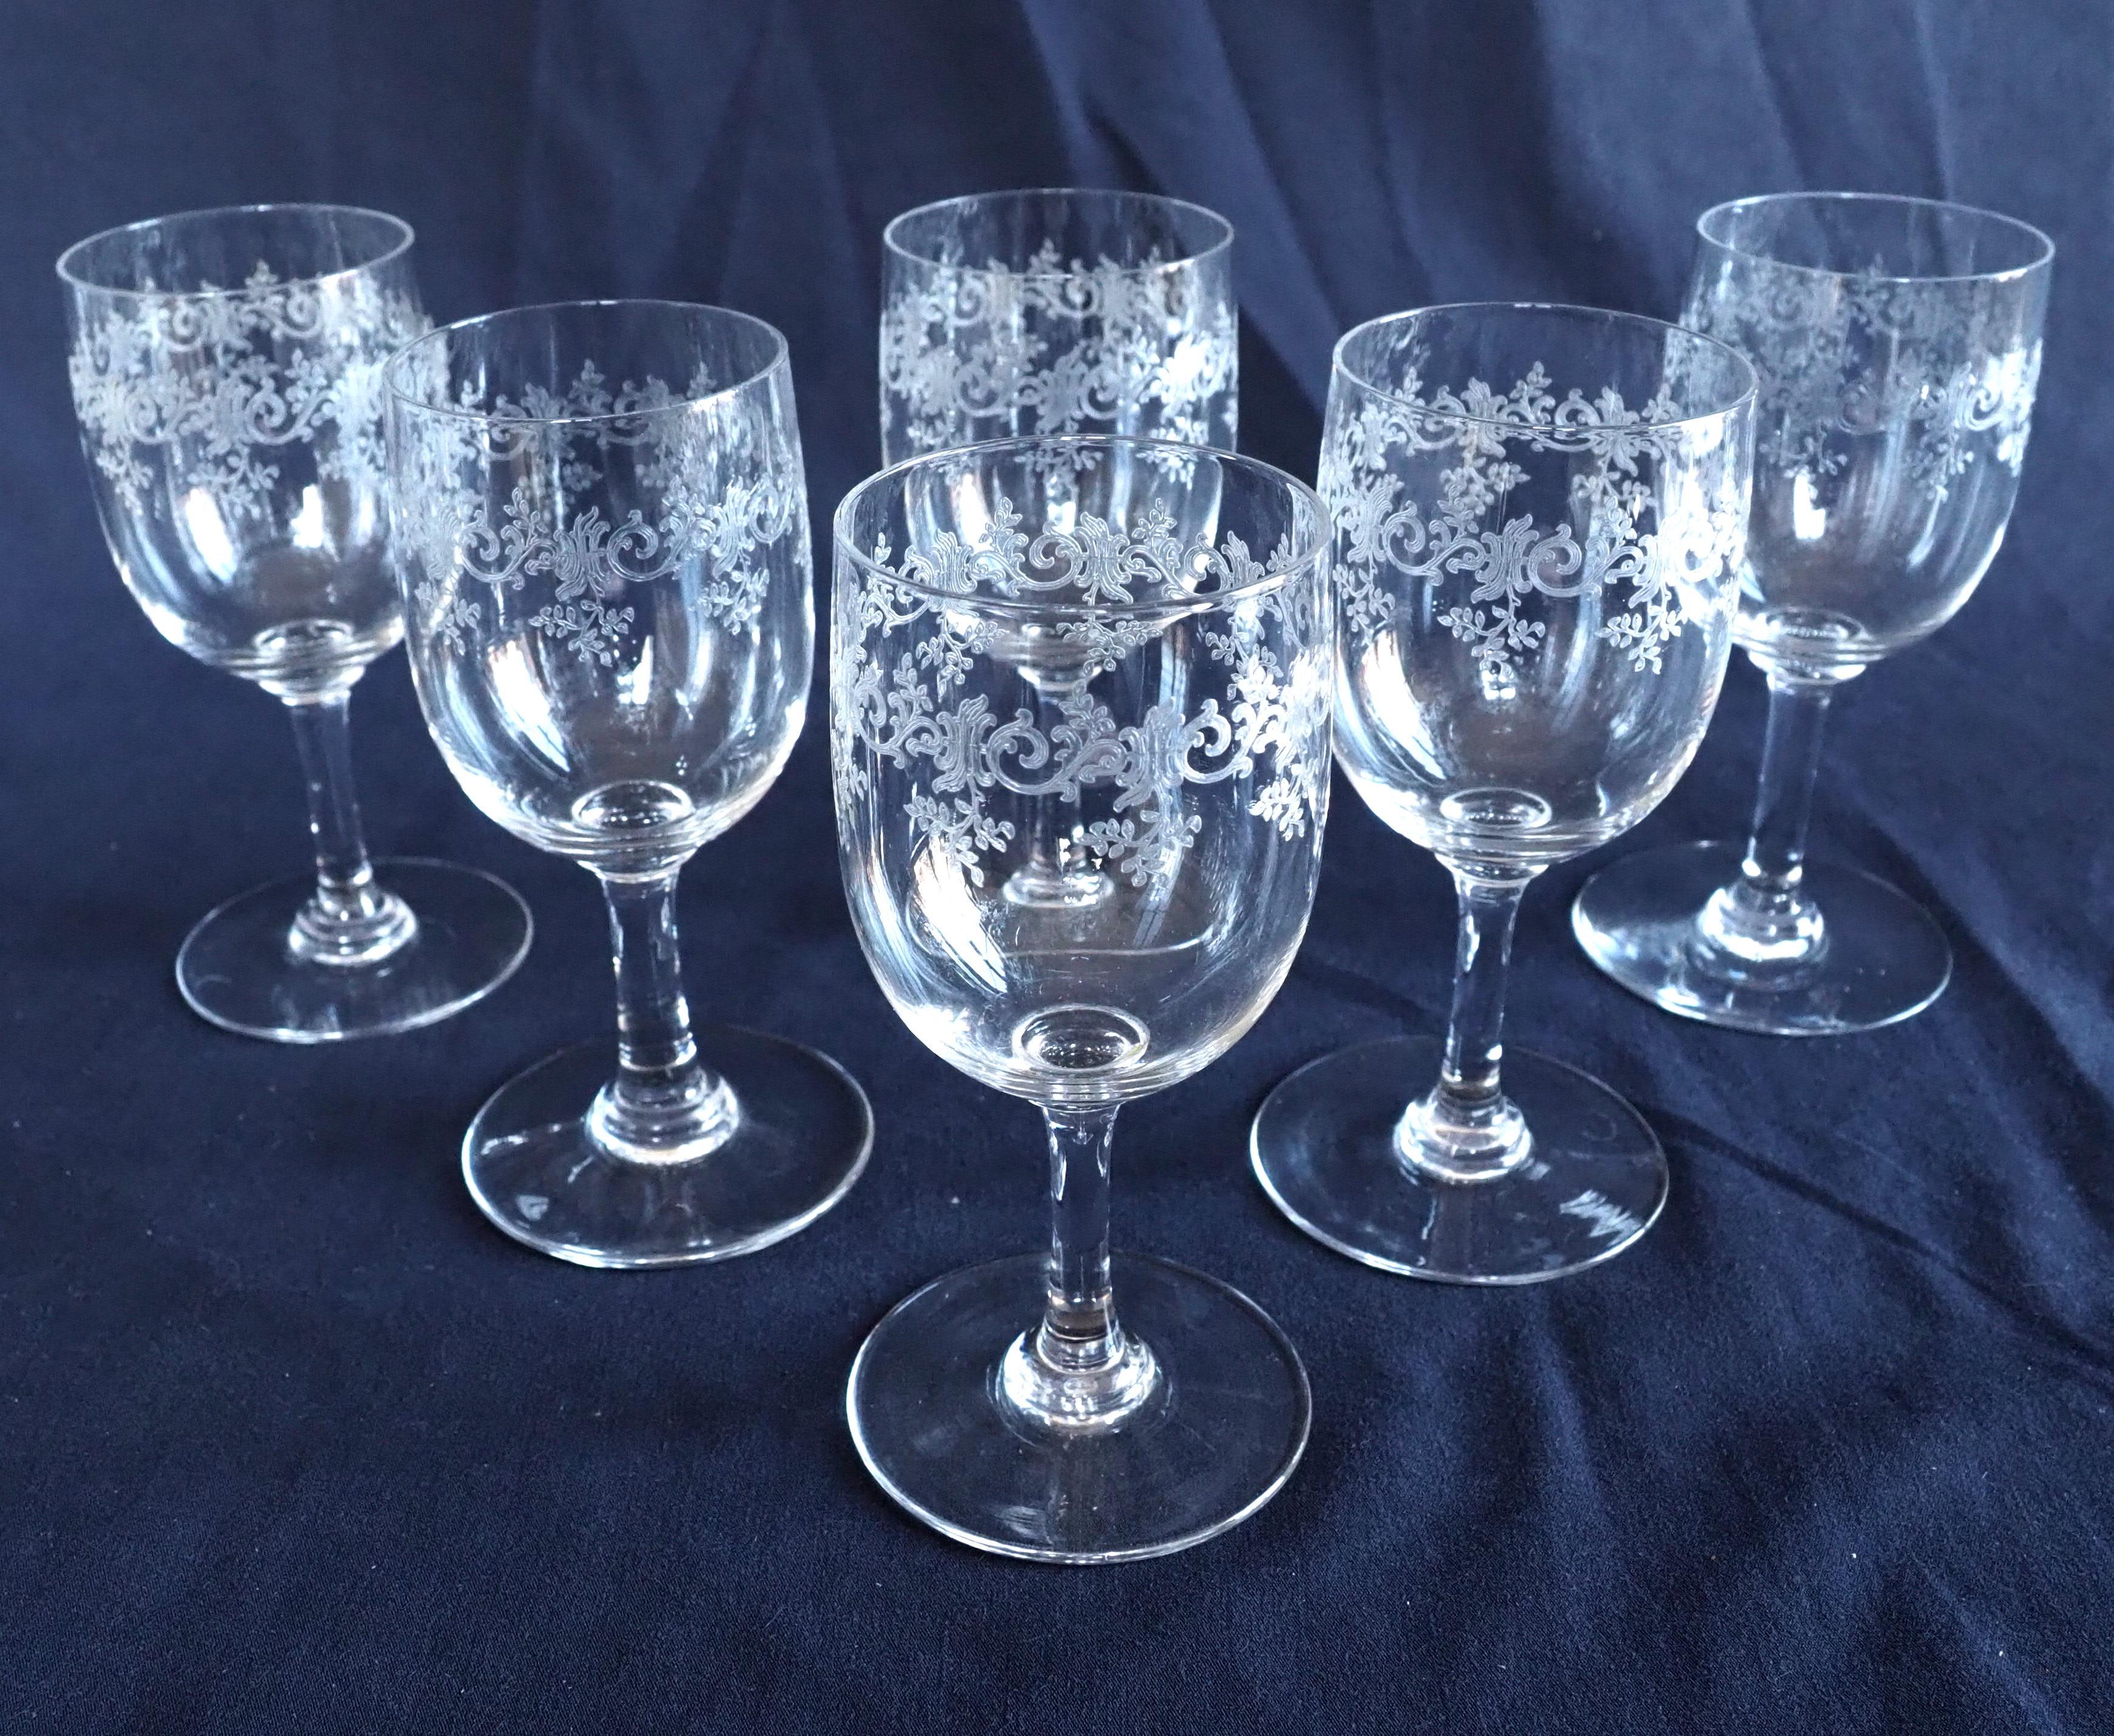 Ensemble de 4 verres en cristal de Baccarat, modèle dit Sévigné, composé de :
- 1 verre à eau - format américain (16,9cm de haut) (format rare)
- 1 verre à vin rouge (cm de haut)
- 1 verre à vin blanc (cm de haut)
- 1 verre de porto (cm de